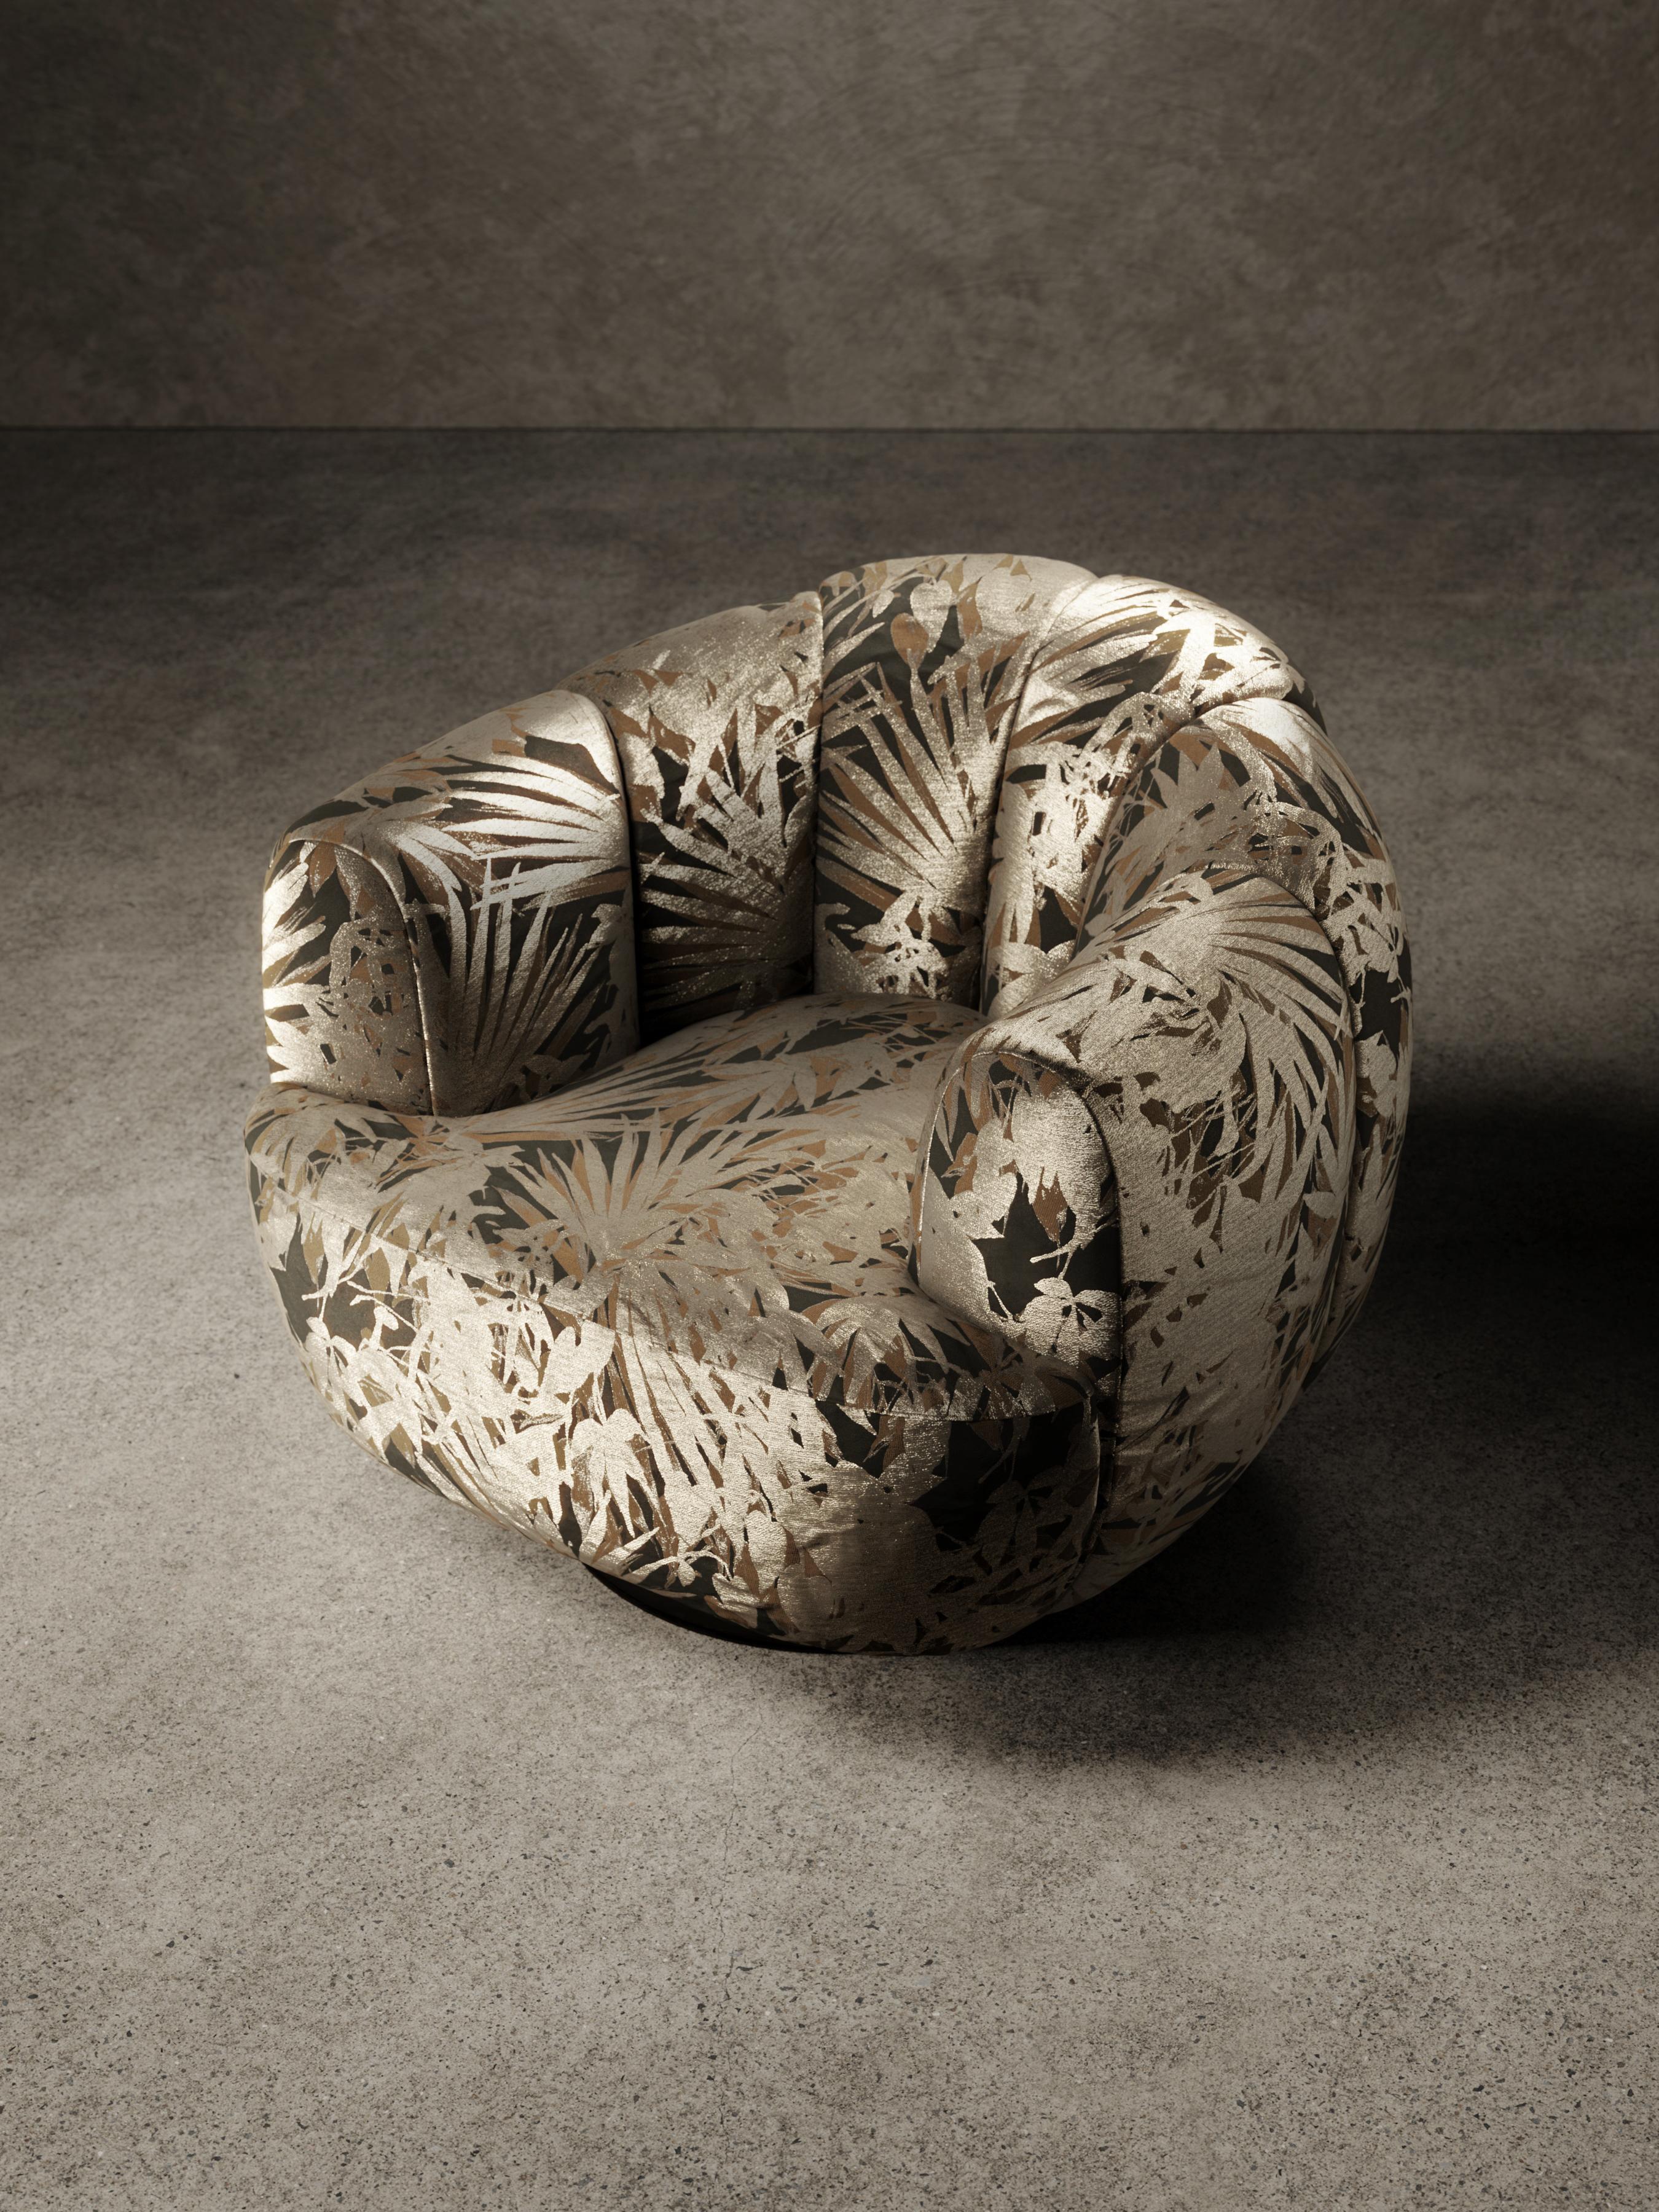 Le fauteuil Ornella est composé d'un cadre en bois rembourré de mousse de polyuréthane et recouvert d'une couche supérieure de mousse de polyuréthane
fibre acrylique. Le dos est caractérisé par de larges piqûres verticales, tandis que les bretelles